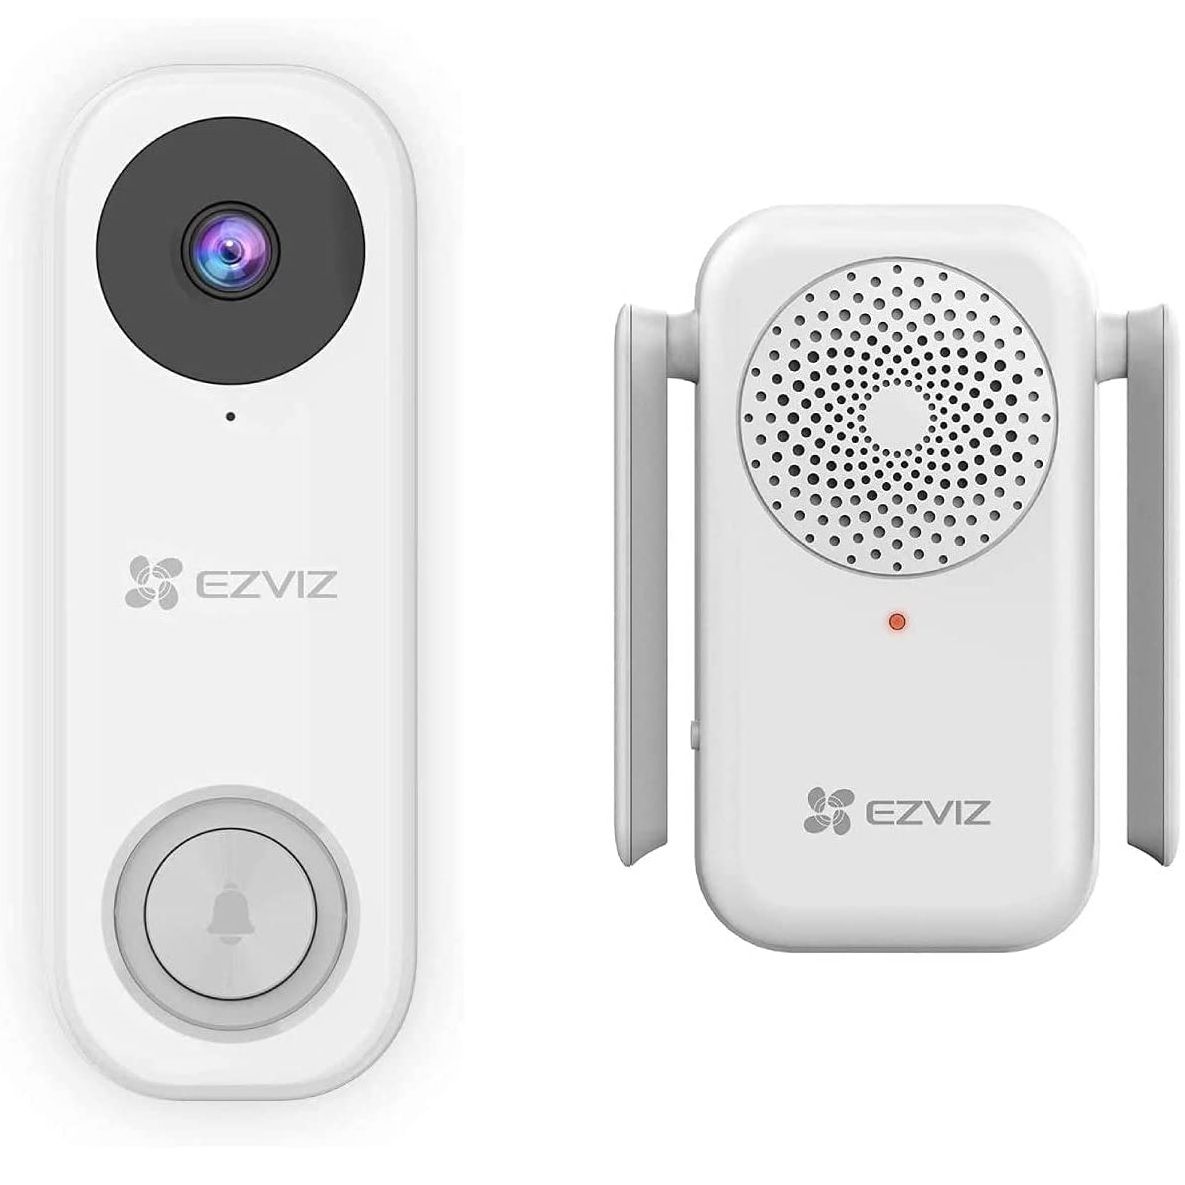 Front view of the EZVIZ DB1C Video Doorbell Camera